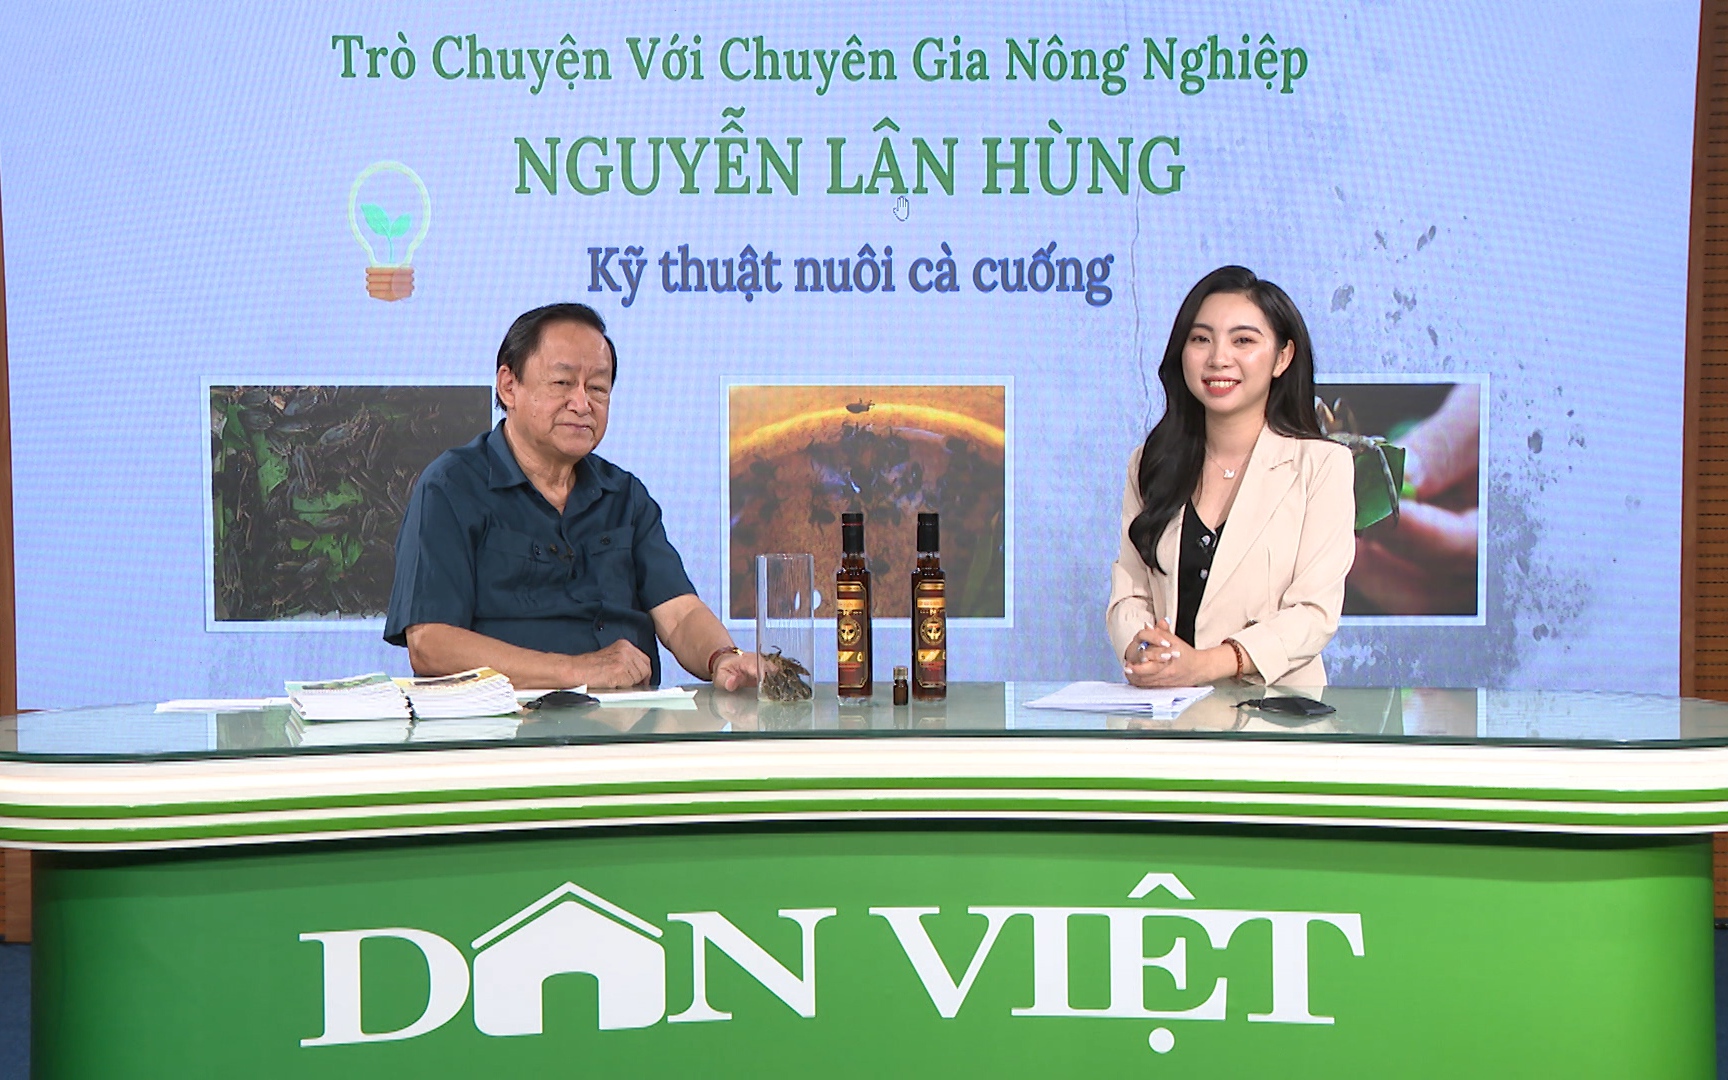 GÓC CHUYÊN GIA: Chuyên gia Nguyễn Lân Hùng 